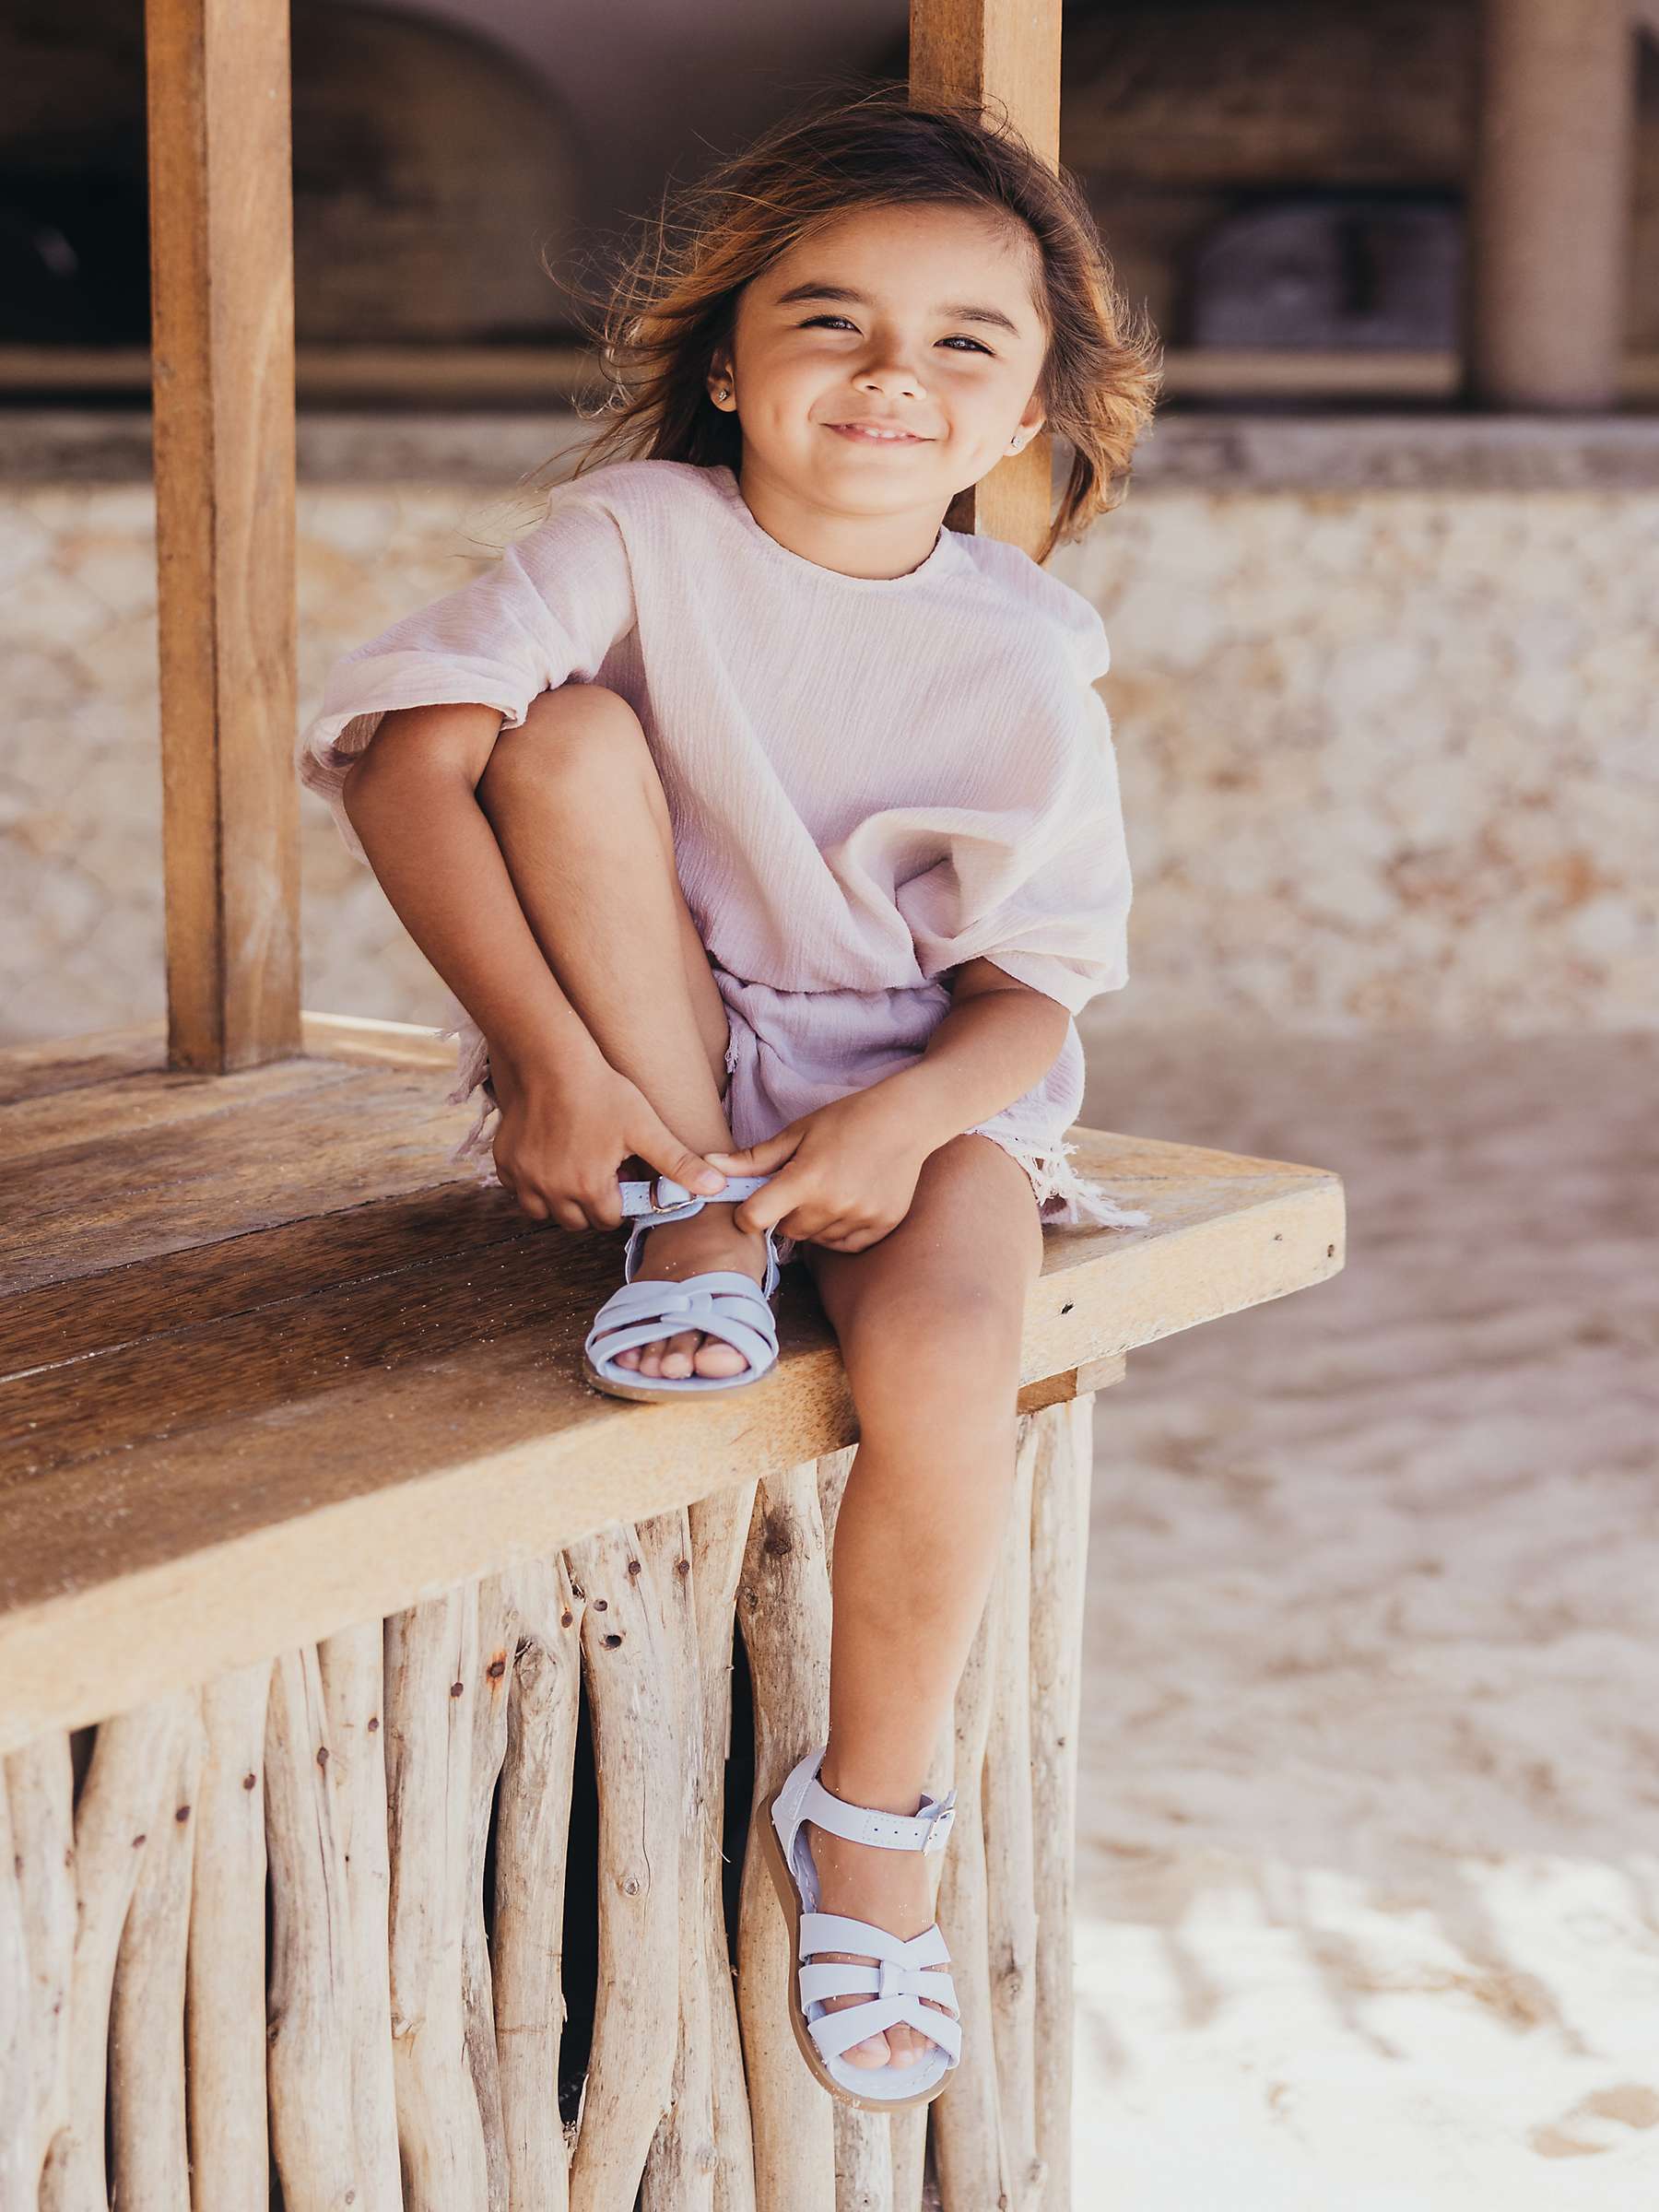 Buy Salt-Water Kids' Original Leather Sandals, Light Blue Online at johnlewis.com